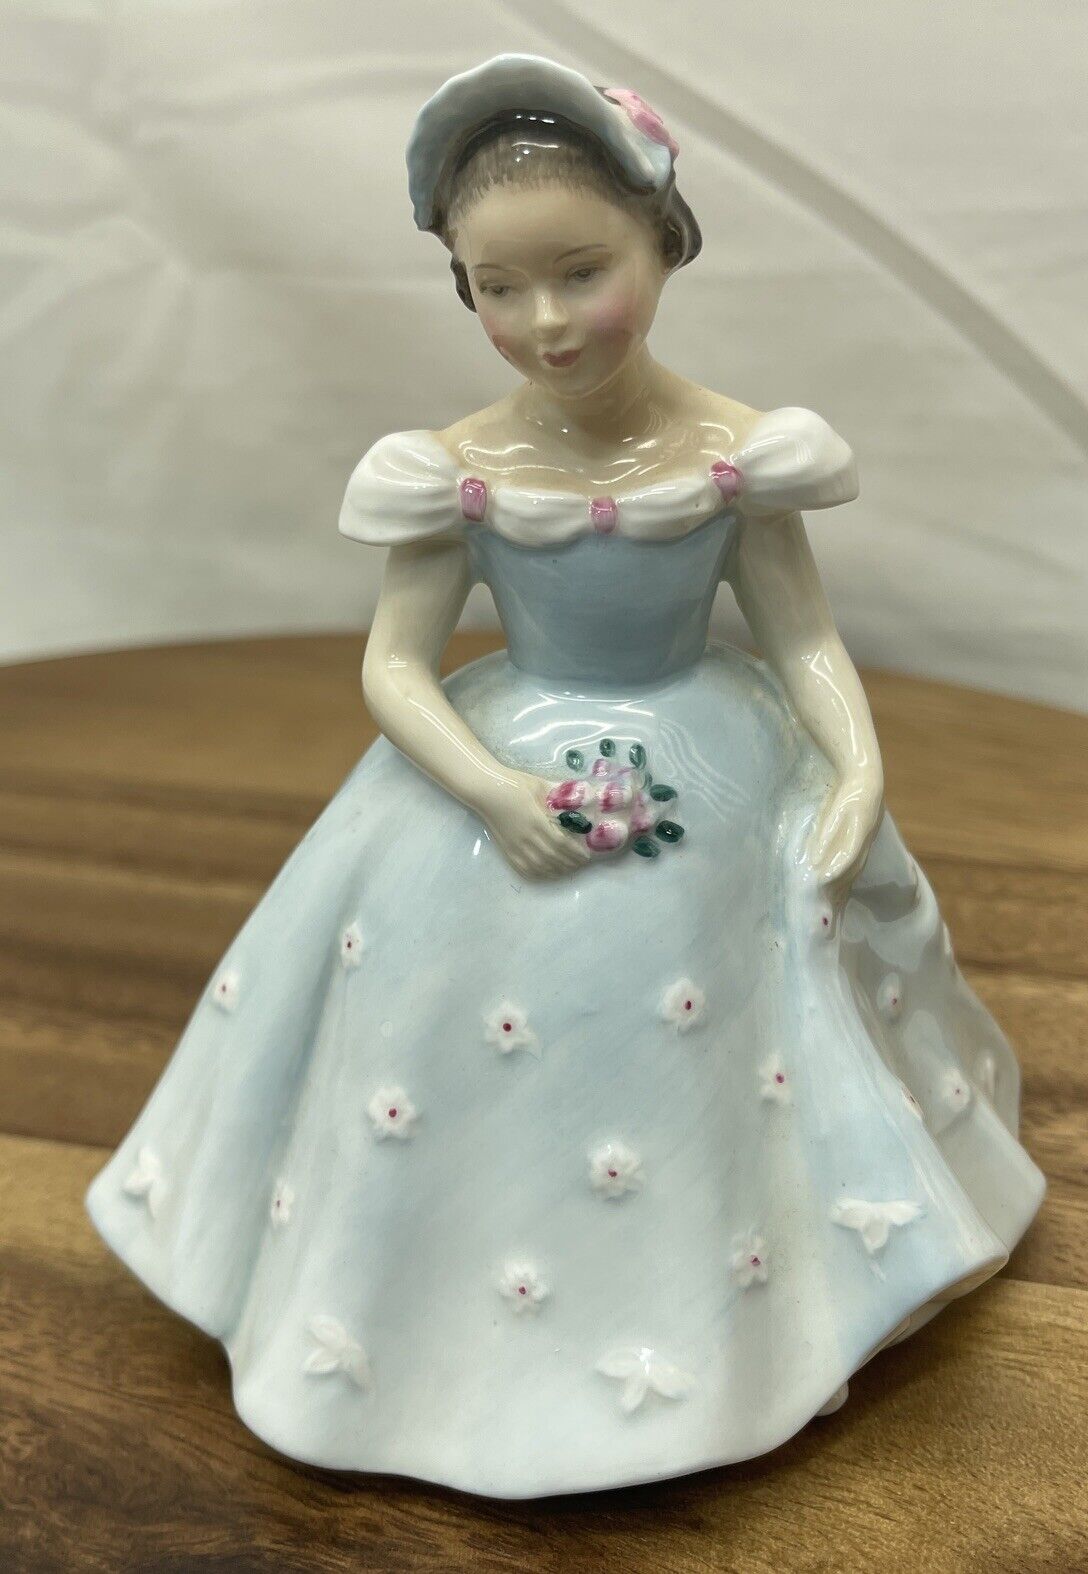 Vintage Royal Doulton The Bridesmaid Figurine HN 2196 Copr 1959